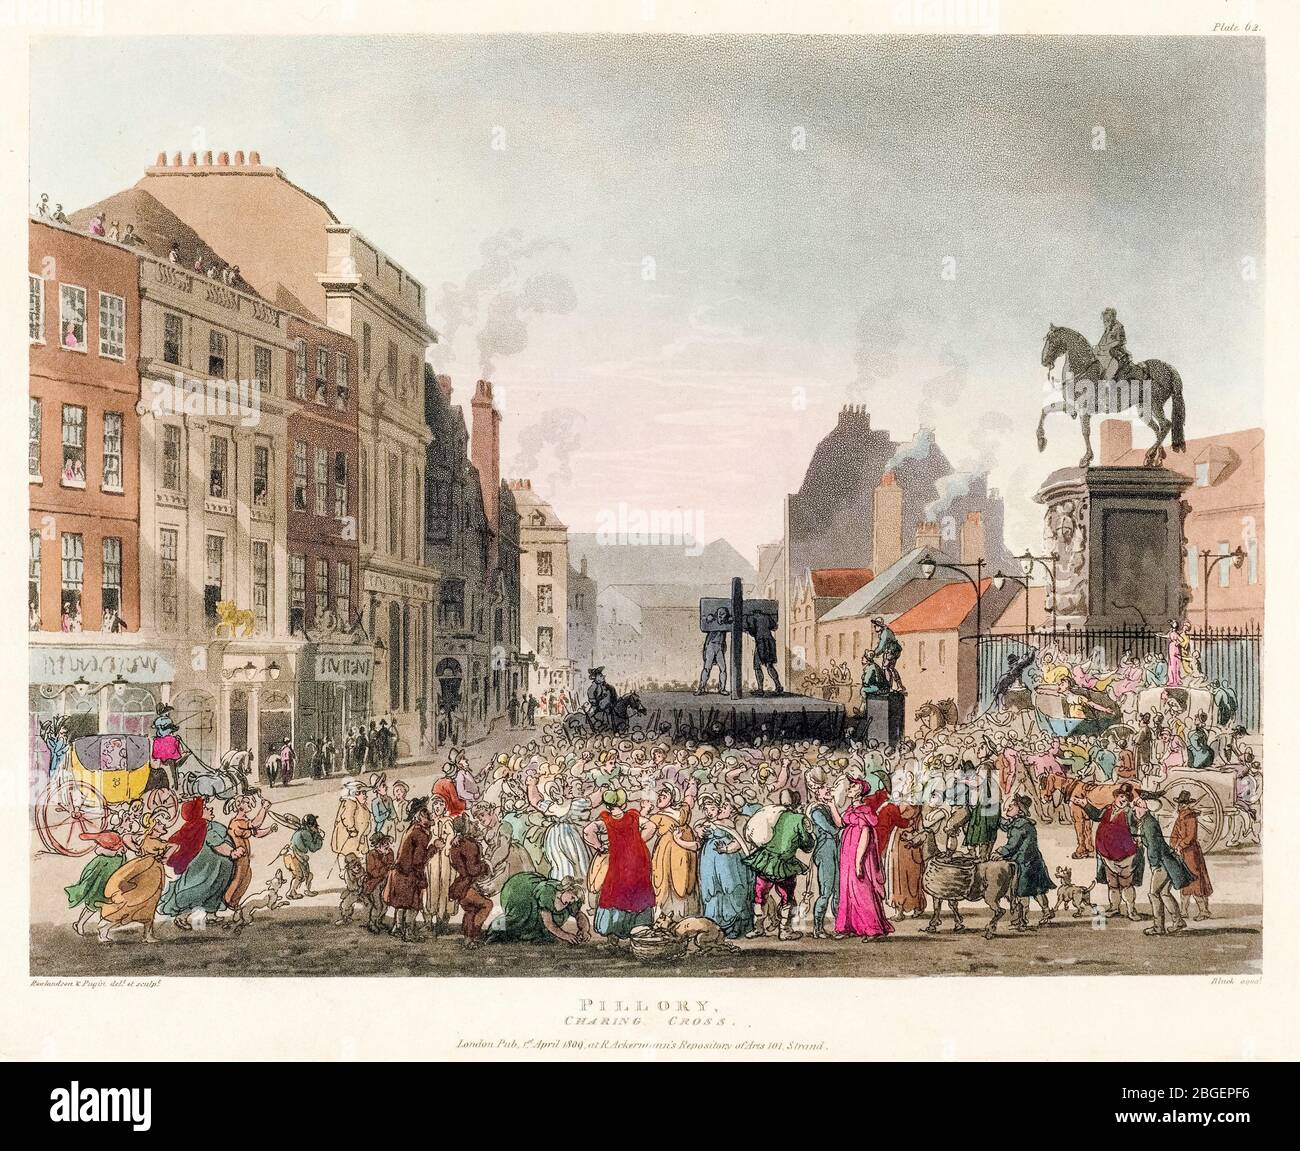 Thomas Rowlandson & Augustus Charles Pugin, 'Pillory', Charing Cross, (acciones públicas), grabado, 1808-1810 Foto de stock